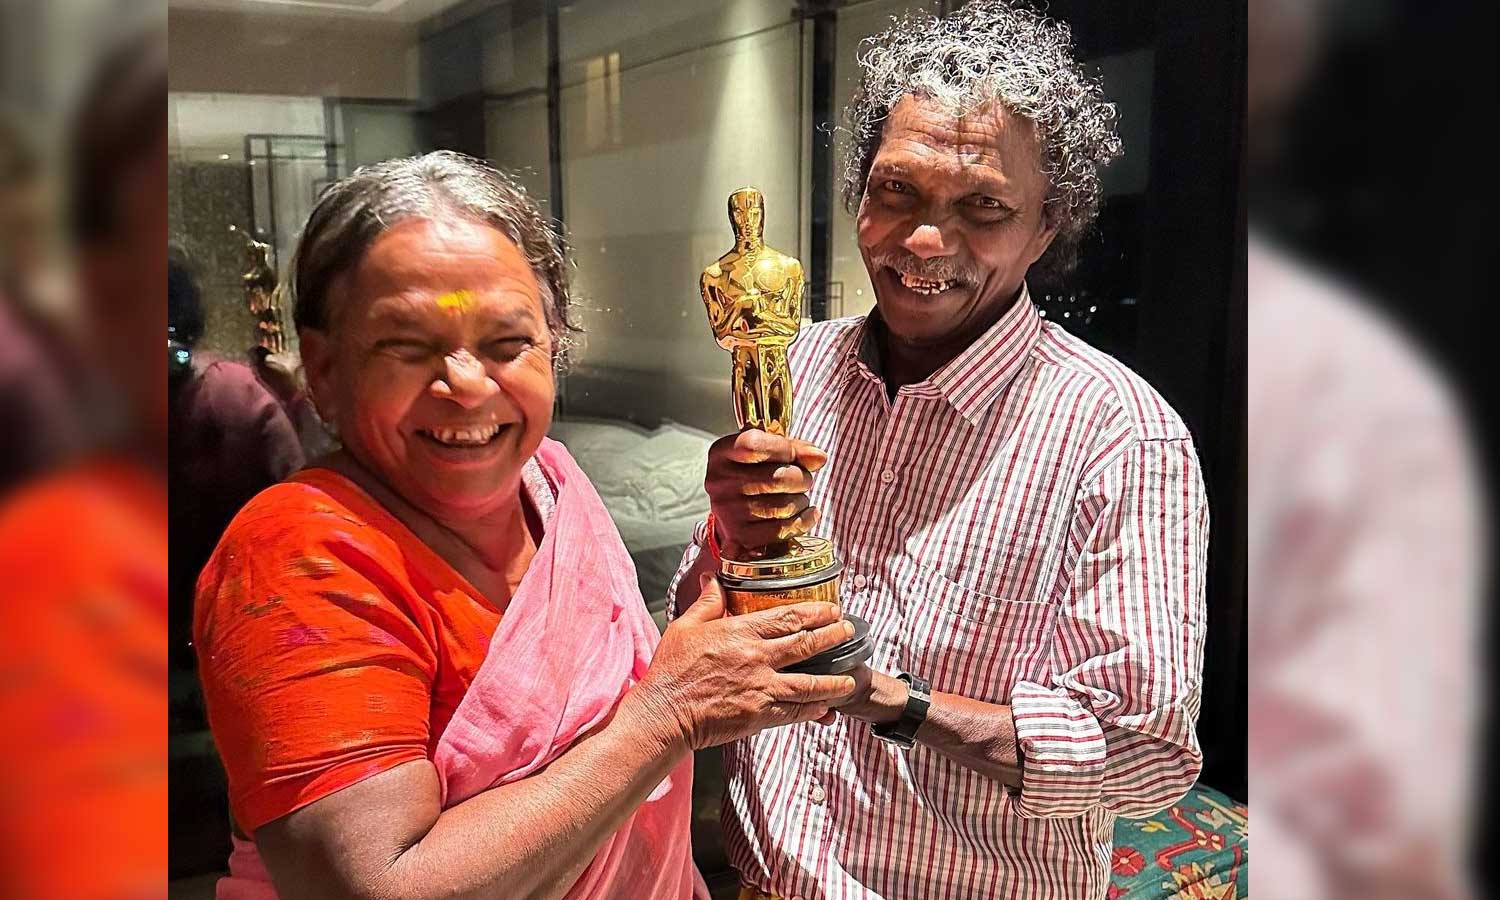 ஆஸ்கர் விருதுடன் தி எலிஃபேண்ட் விஸ்பரர்ஸ் பொம்மன், பெள்ளி தம்பதியினர்..  வைரலாகும் புகைப்படம் | Tamil cinema bomman pelli with oscar award photo  goes viral